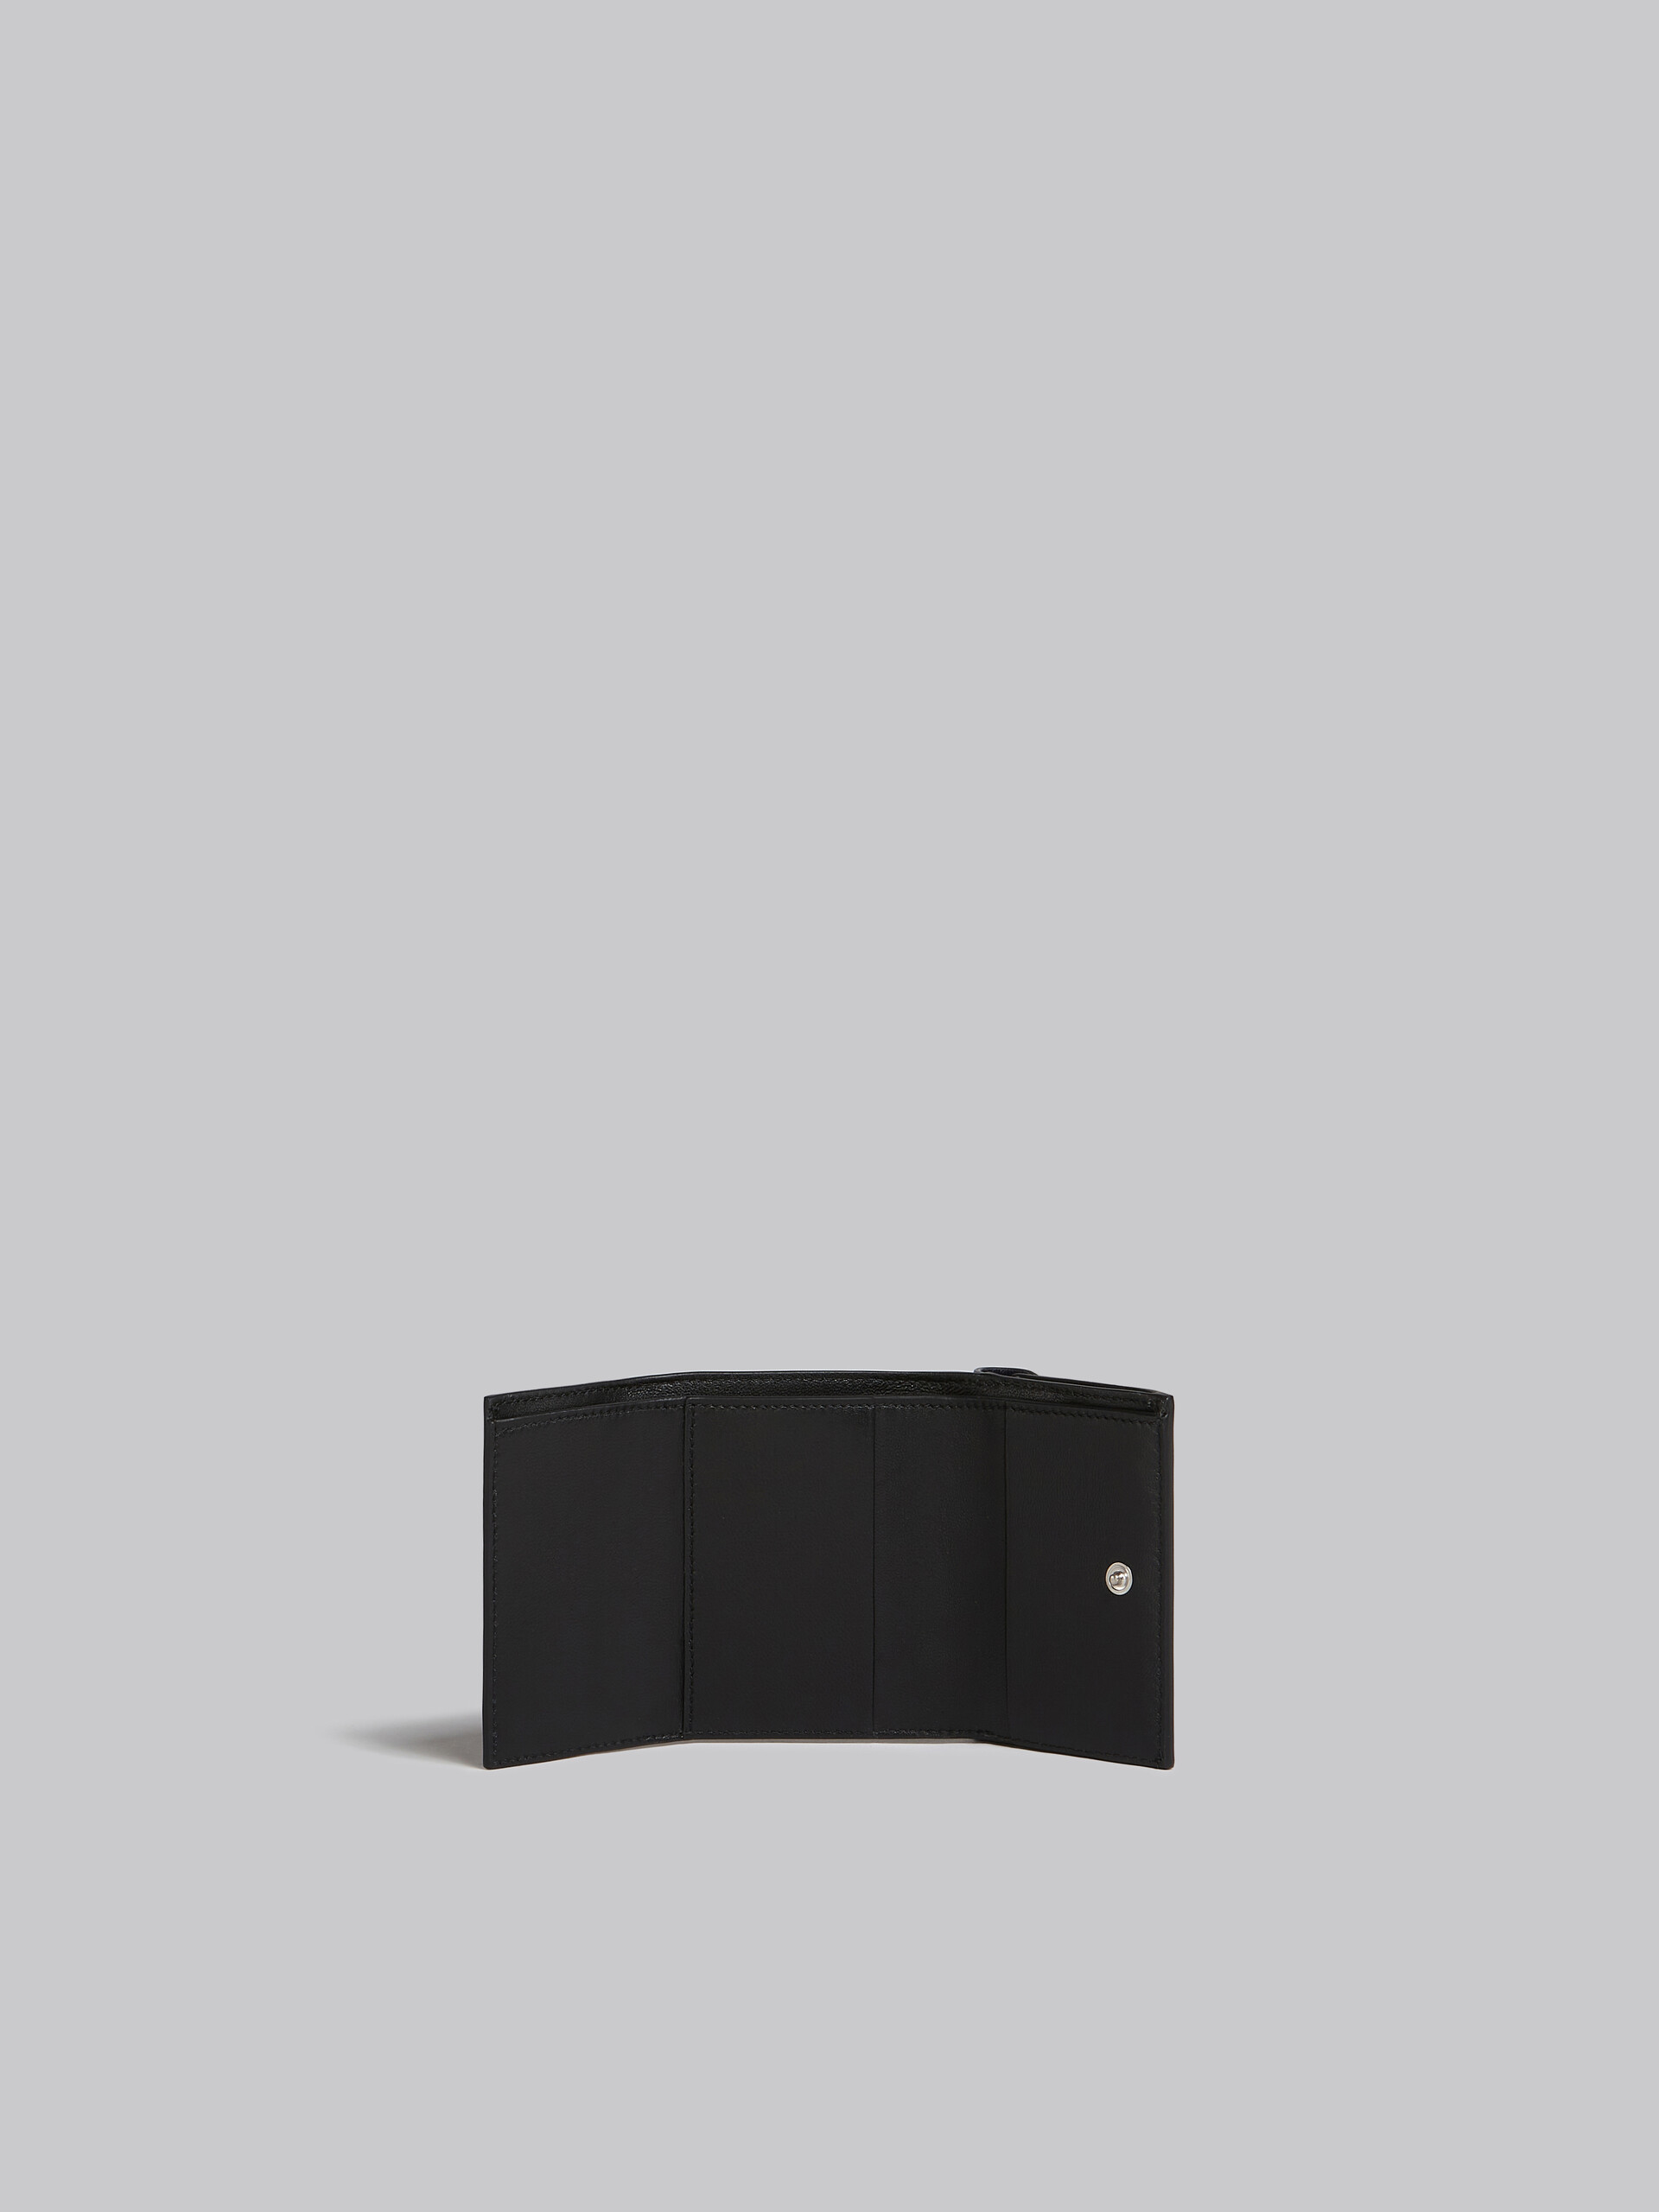 ホワイトとグリーン レザー製三つ折りウォレット - 財布 - Image 2